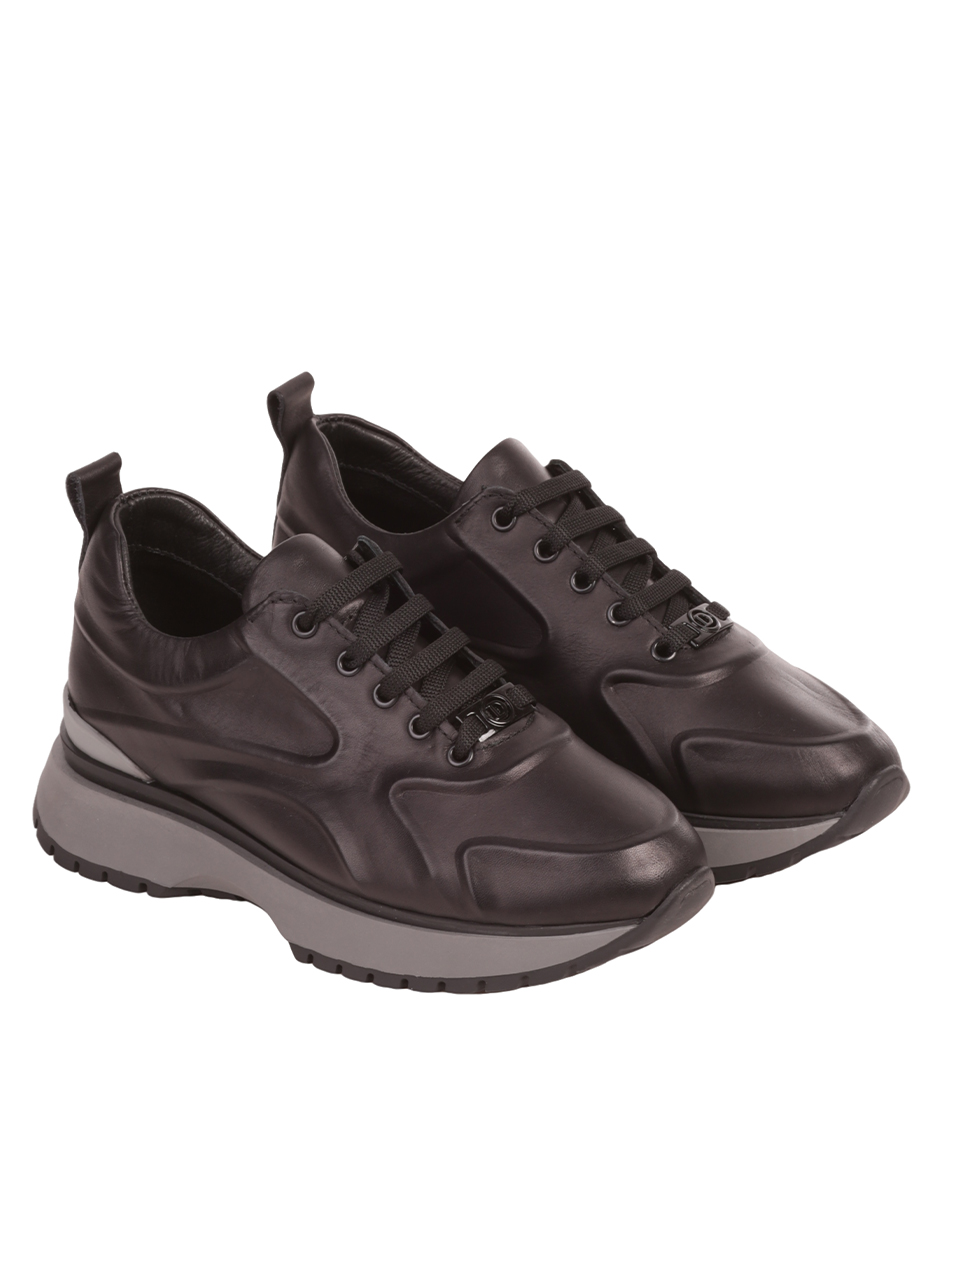 Дамски обувки от естествена кожа в черно 3AT-23696 black/grey